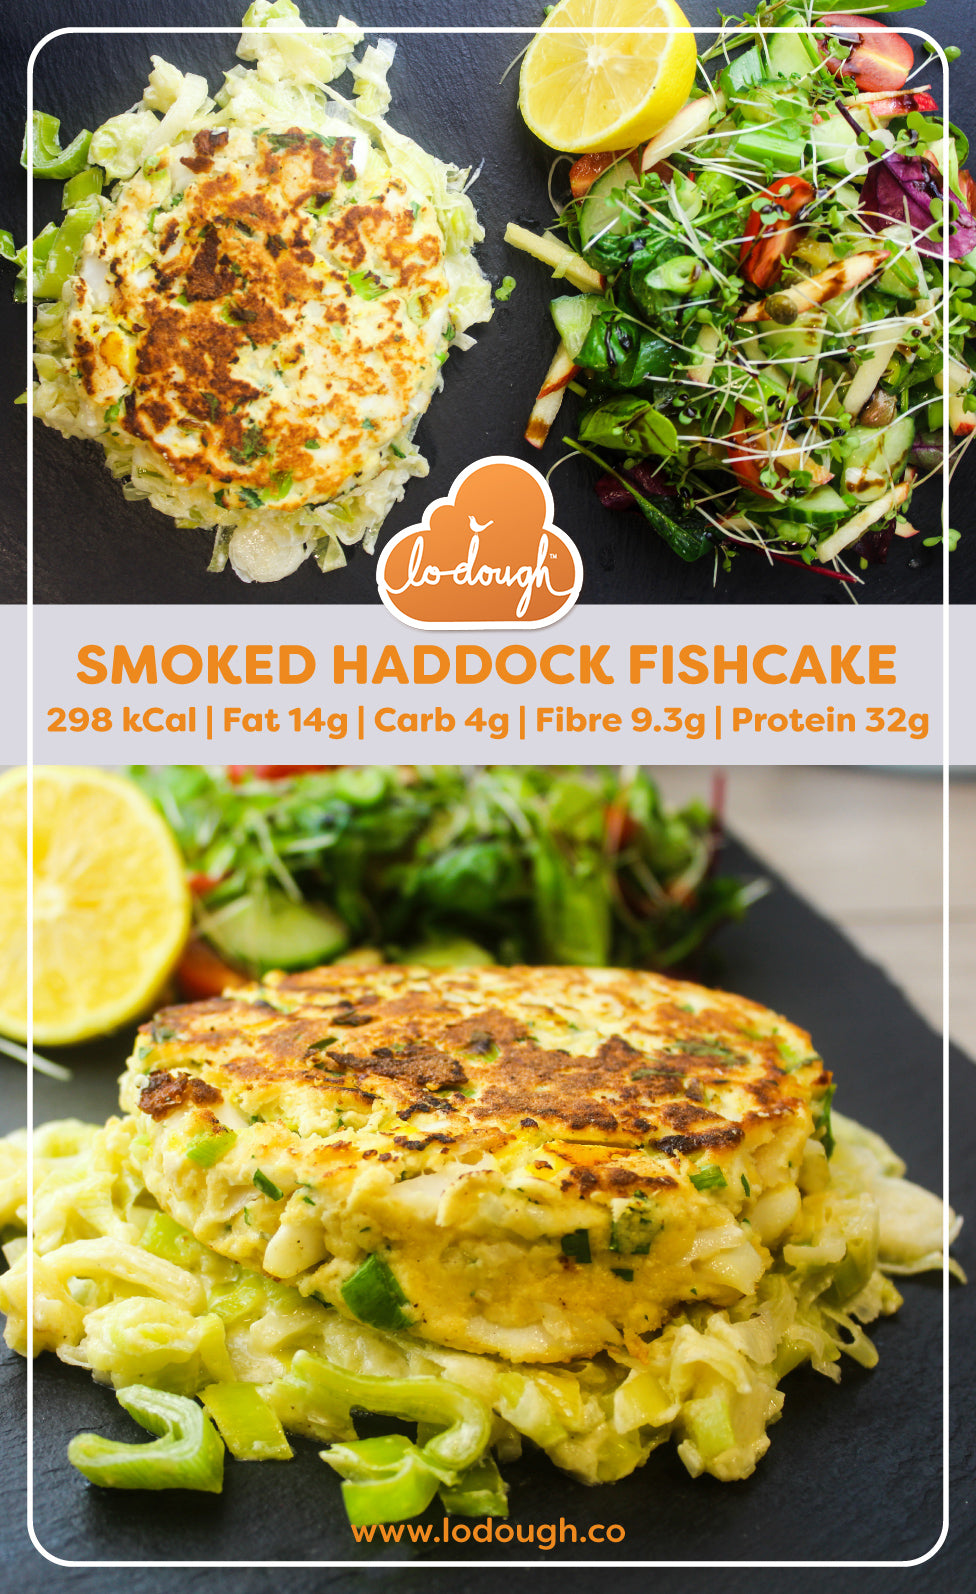 Smoked Haddock Fishcake